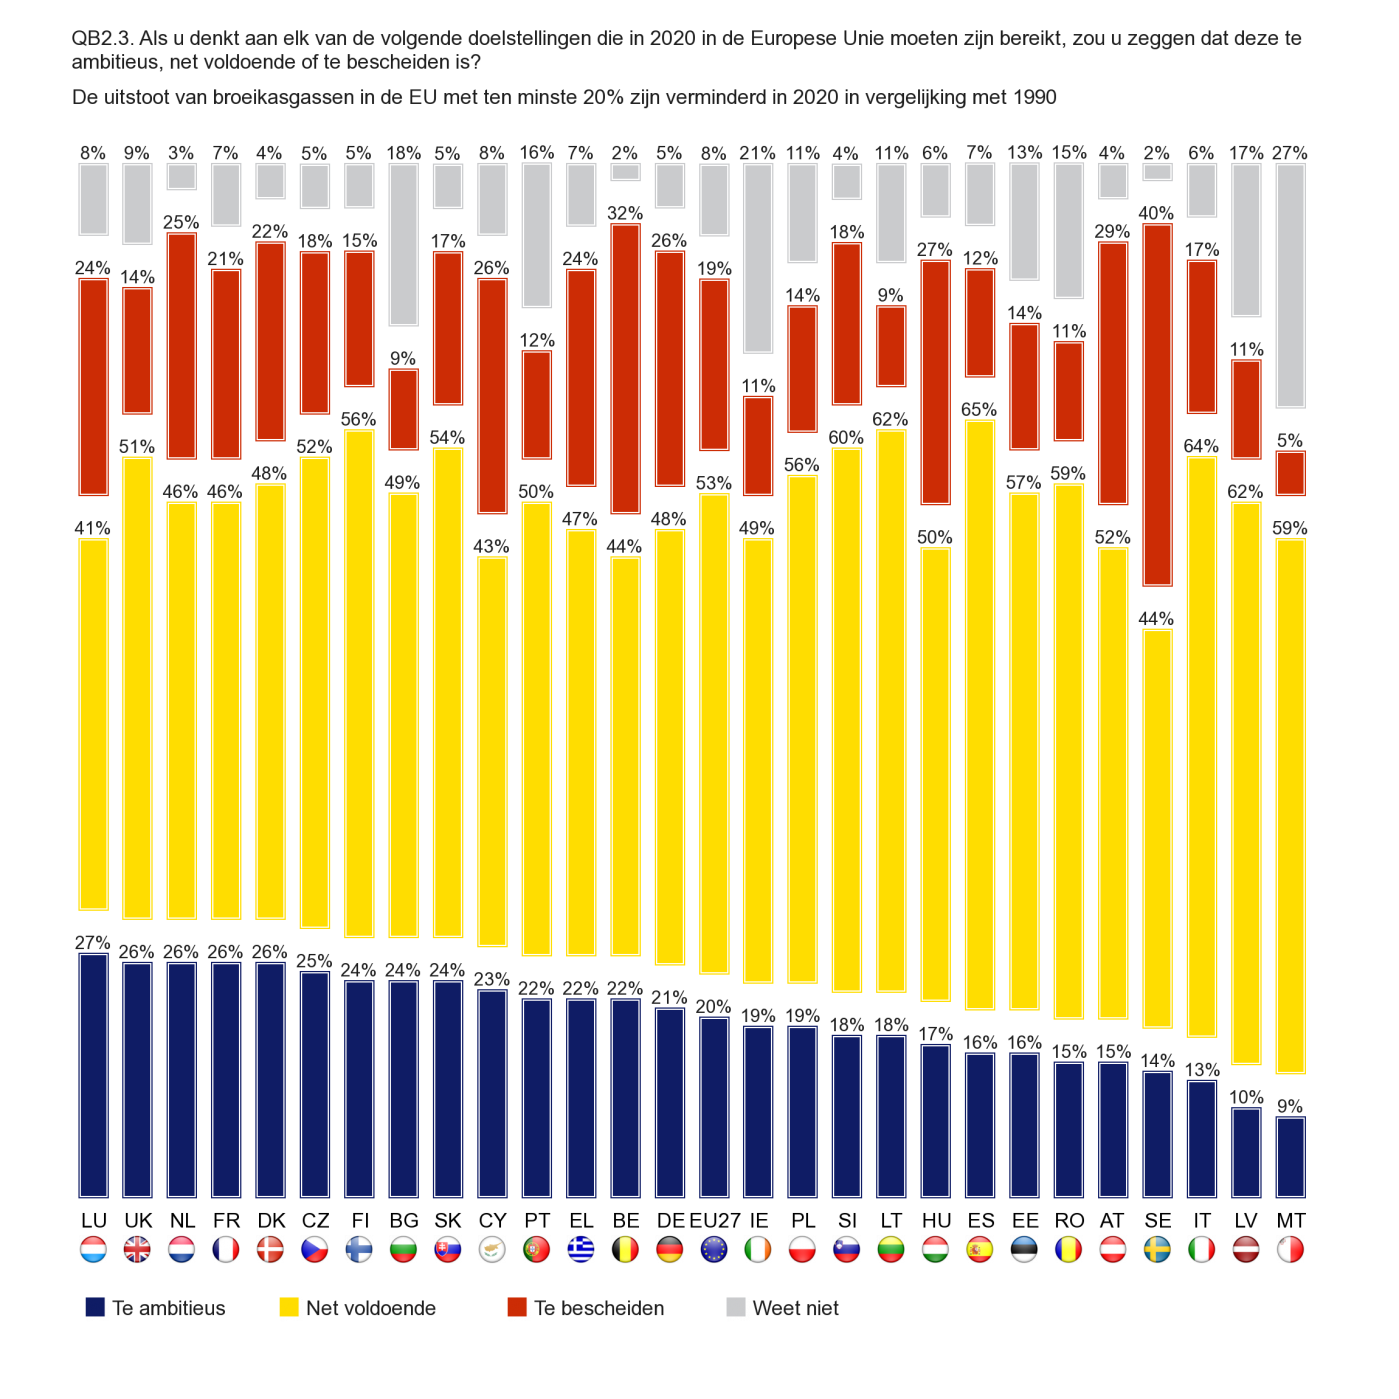 32% van de Belgische respondenten vindt aldus een vermindering van de uitstoot van broeikasgassen in de EU met minstens 20%, vergeleken met 1990, en een verhoging van het aandeel hernieuwbare energie